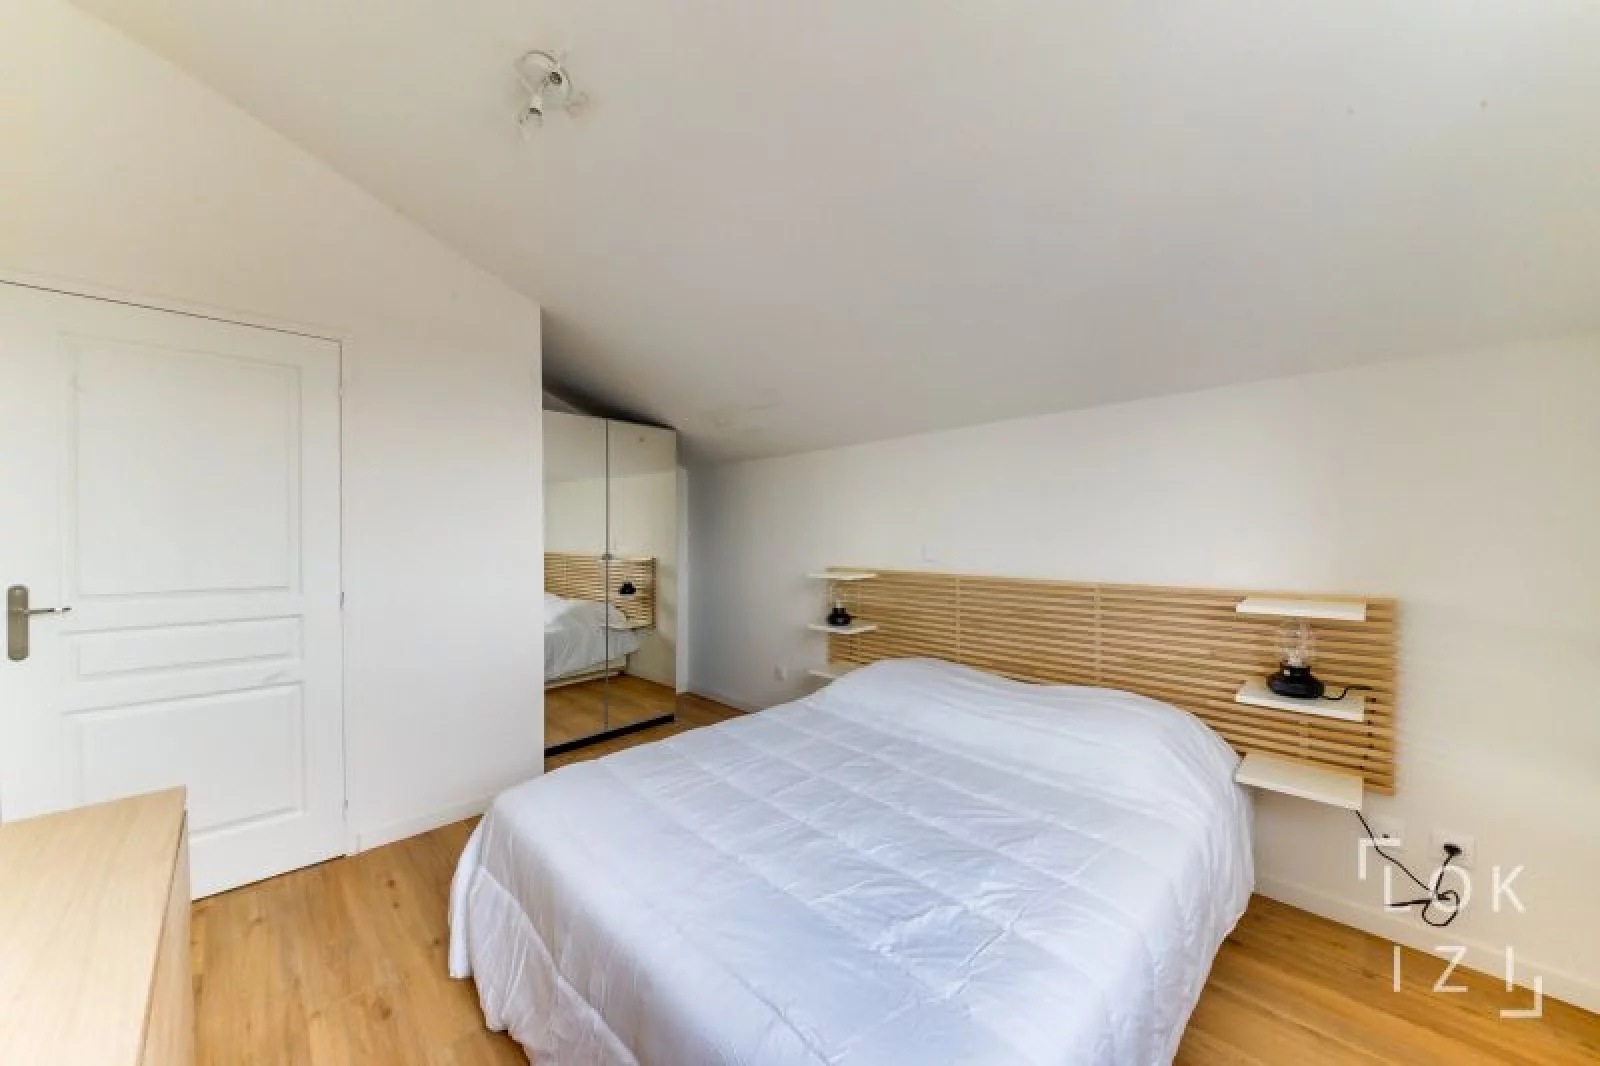 Location appartement meublé 3 pièces 61m² (Bordeaux - Nansouty)